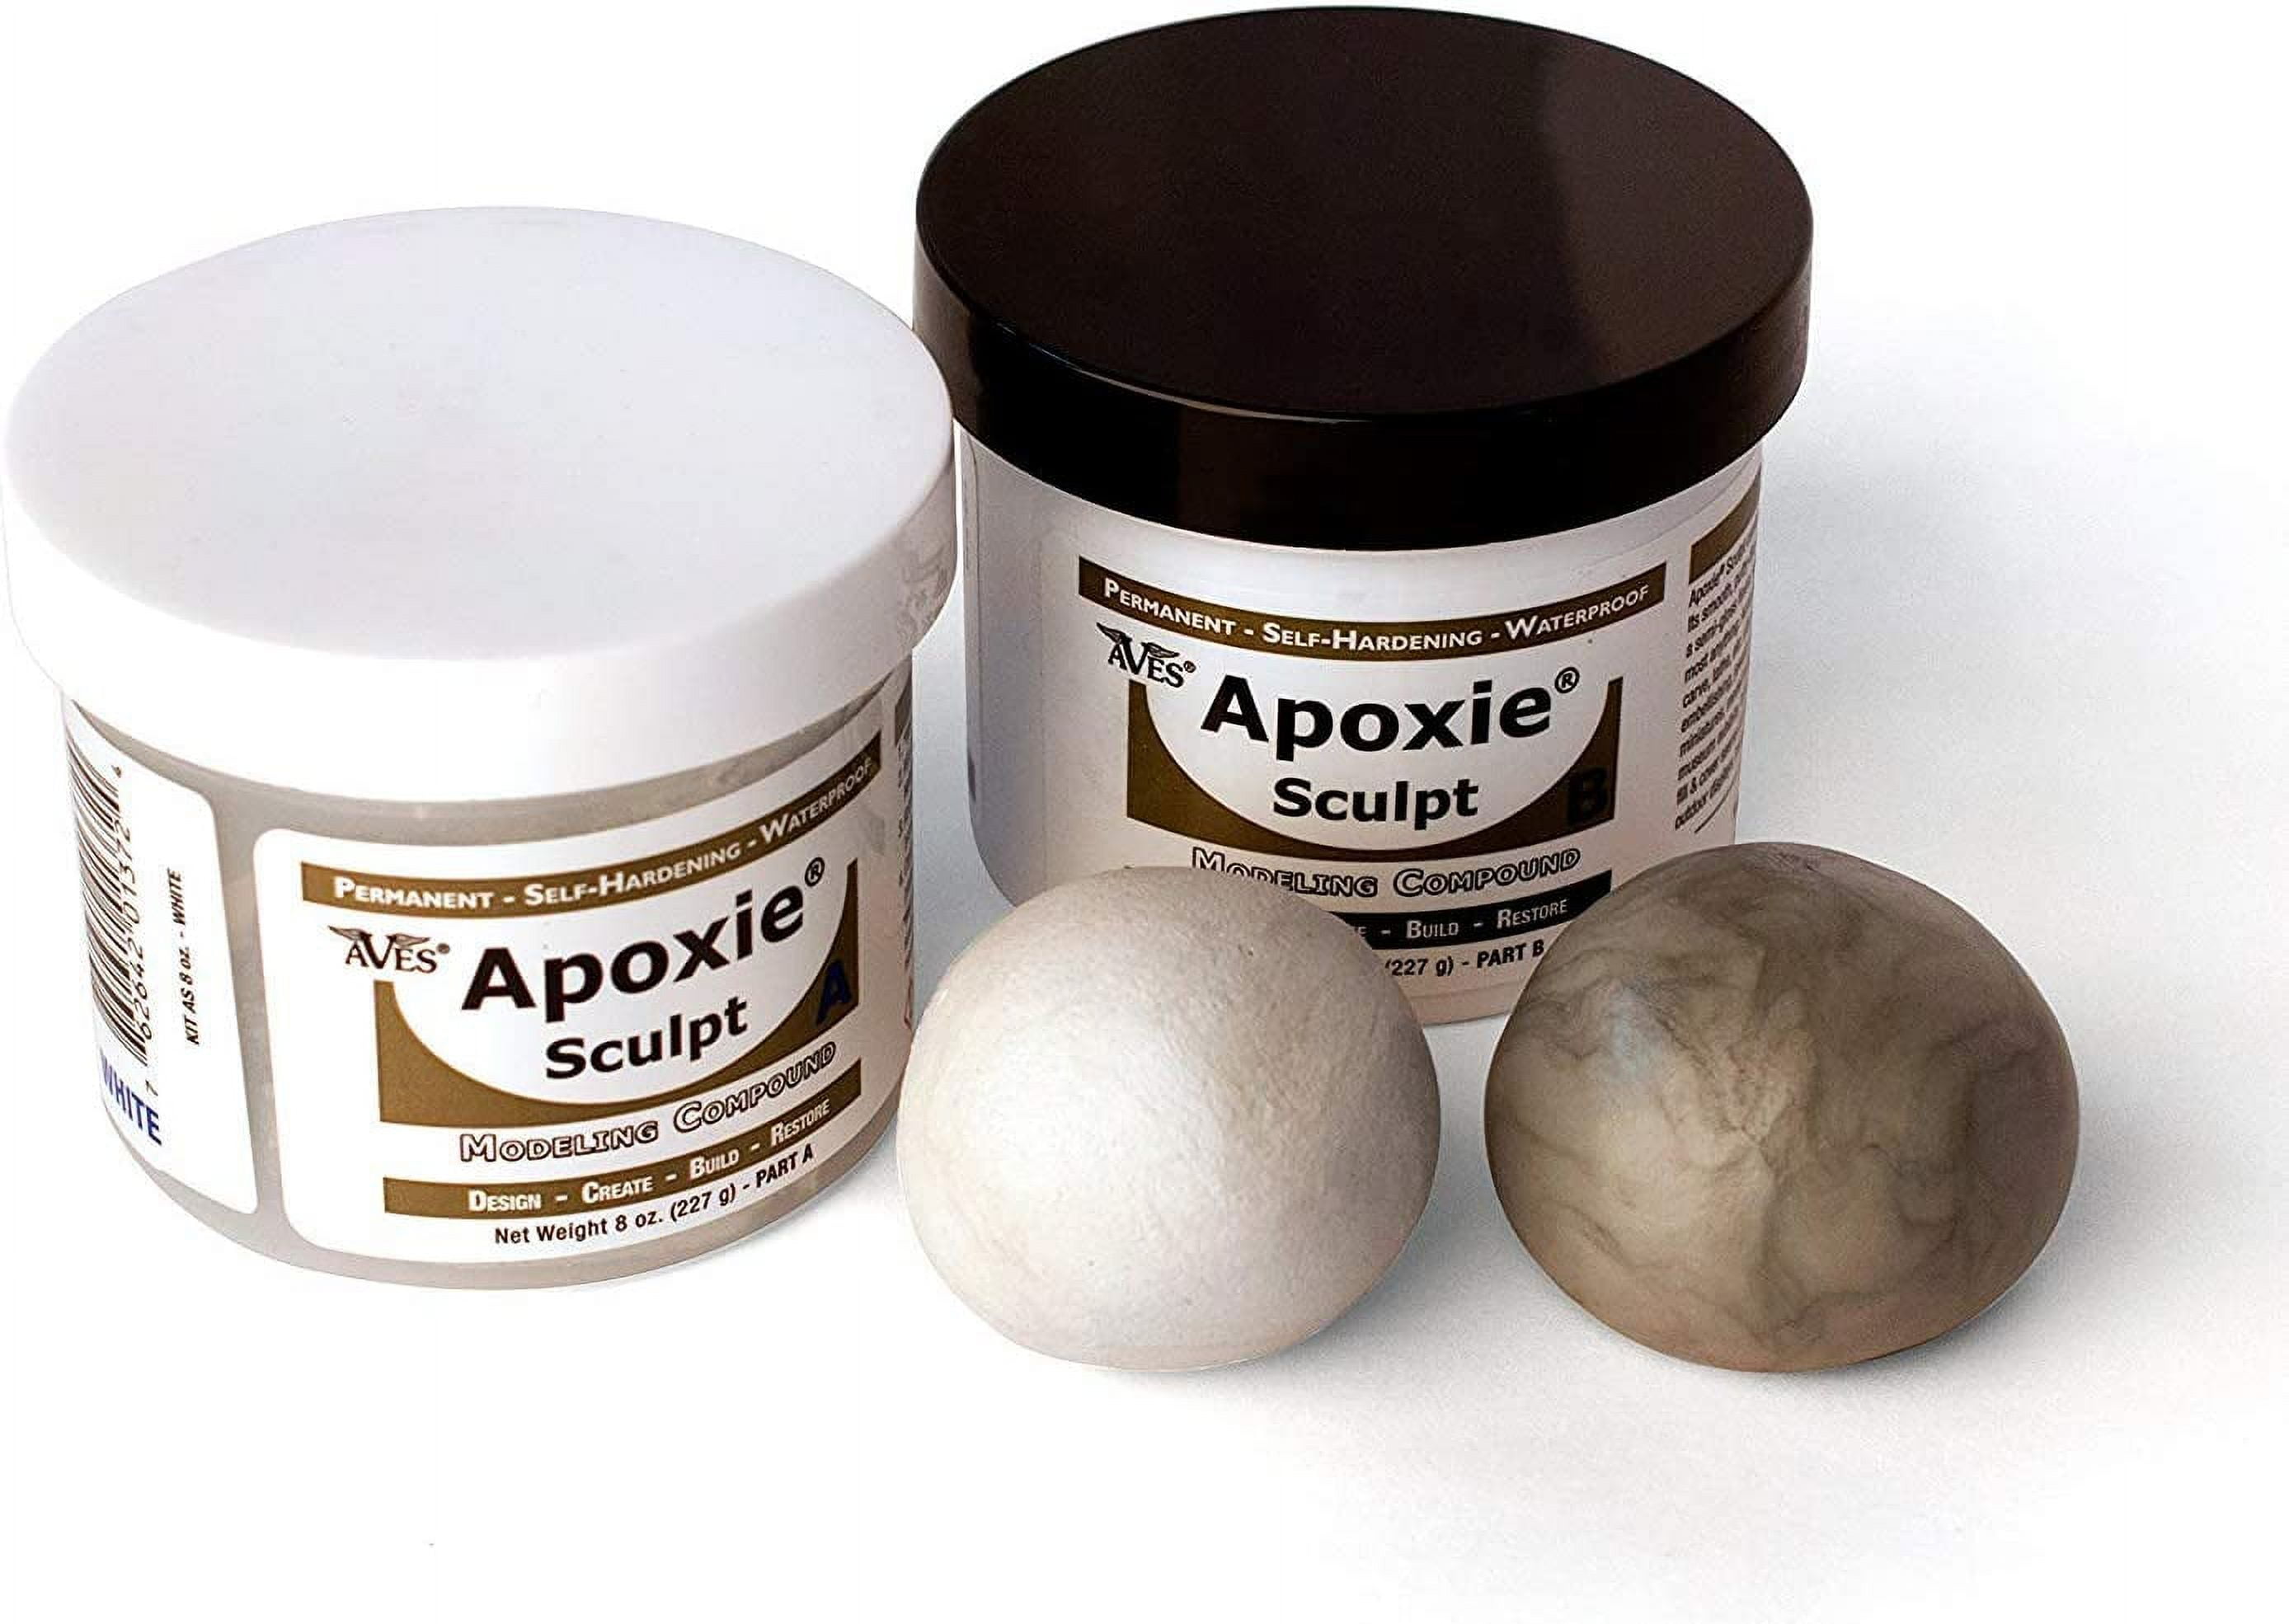 Apoxie Sculpt 1 lb. White, 2 part modeling compound (A & B) 